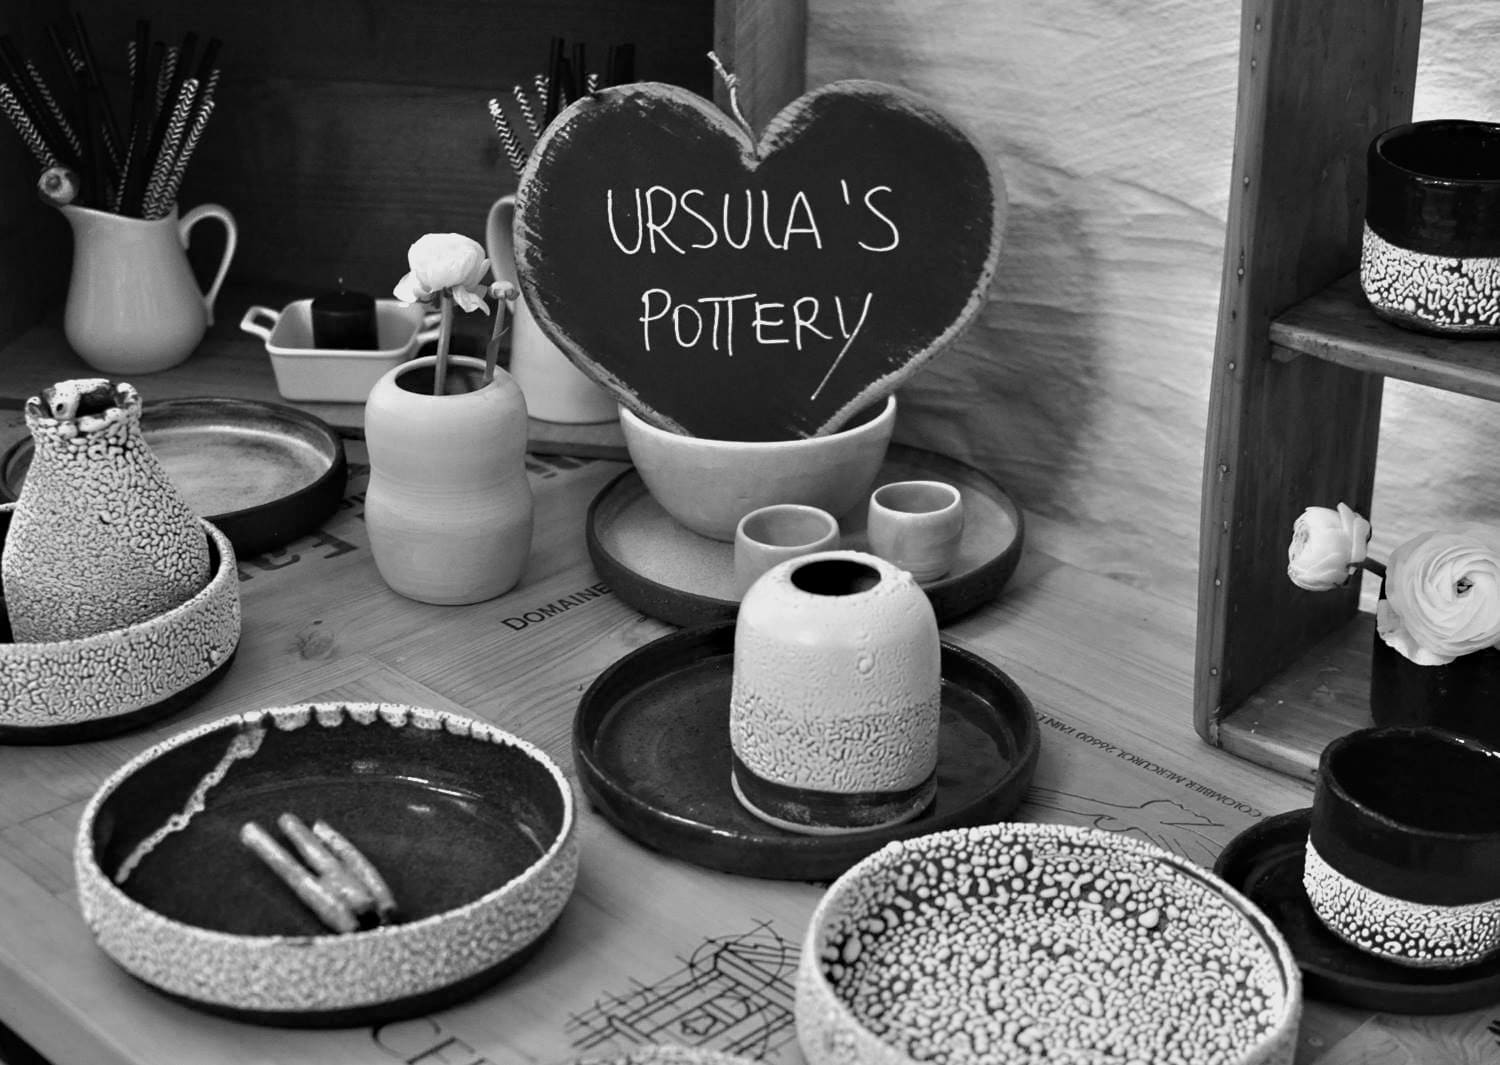 Ursula’s Pottery: čiste linije in umirjeni barvni toni